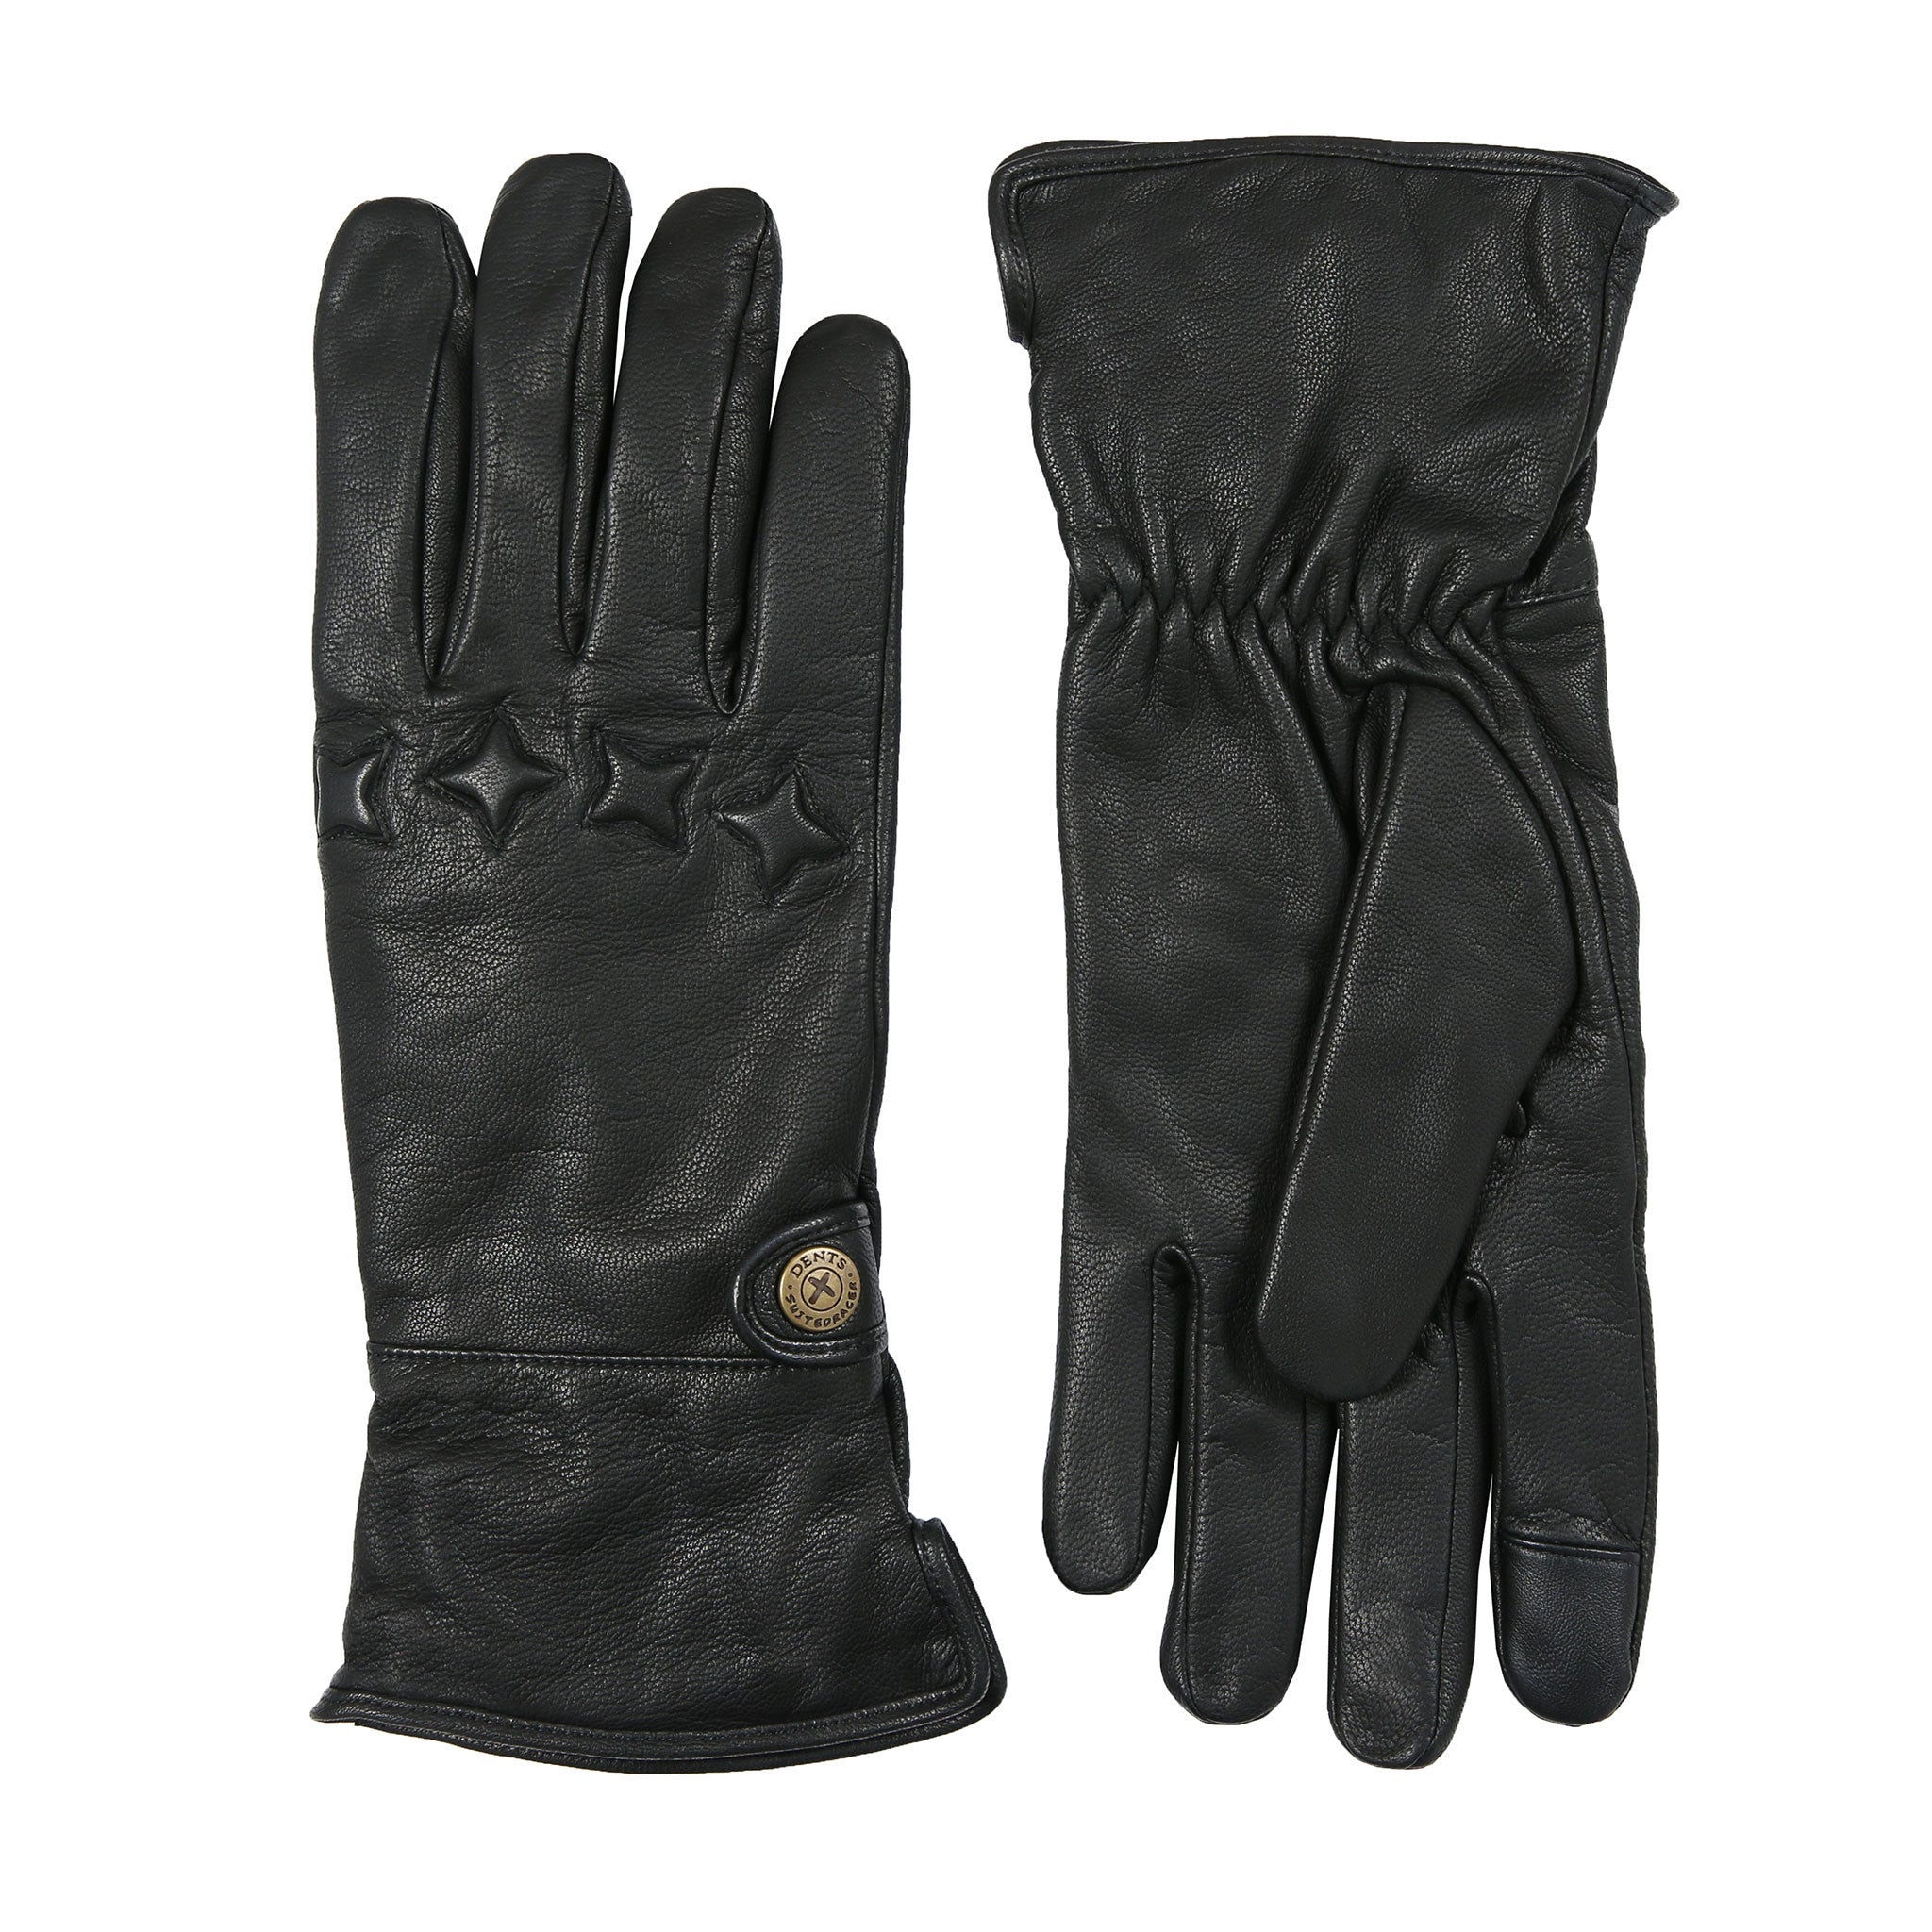 The Suited Racer Men's Fingerless Driving Gloves